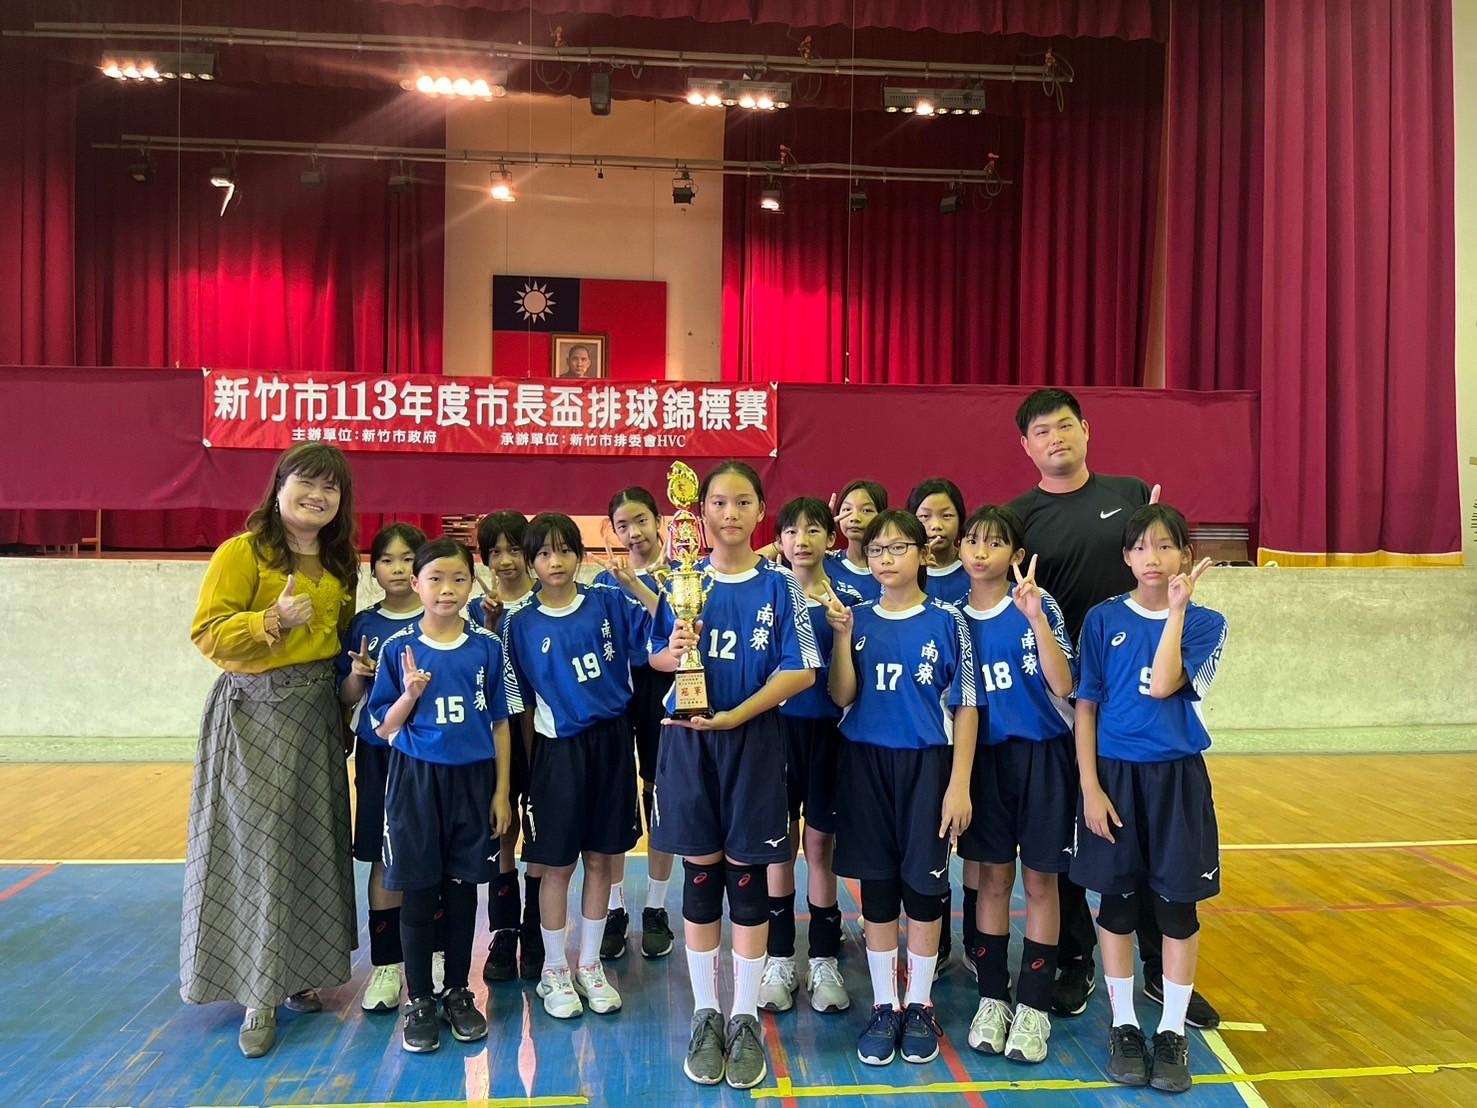 1130515排球隊勇奪新竹市113年度市長盃排球錦標賽 五年級女童組 #冠軍🏆🏆🏆活動照片